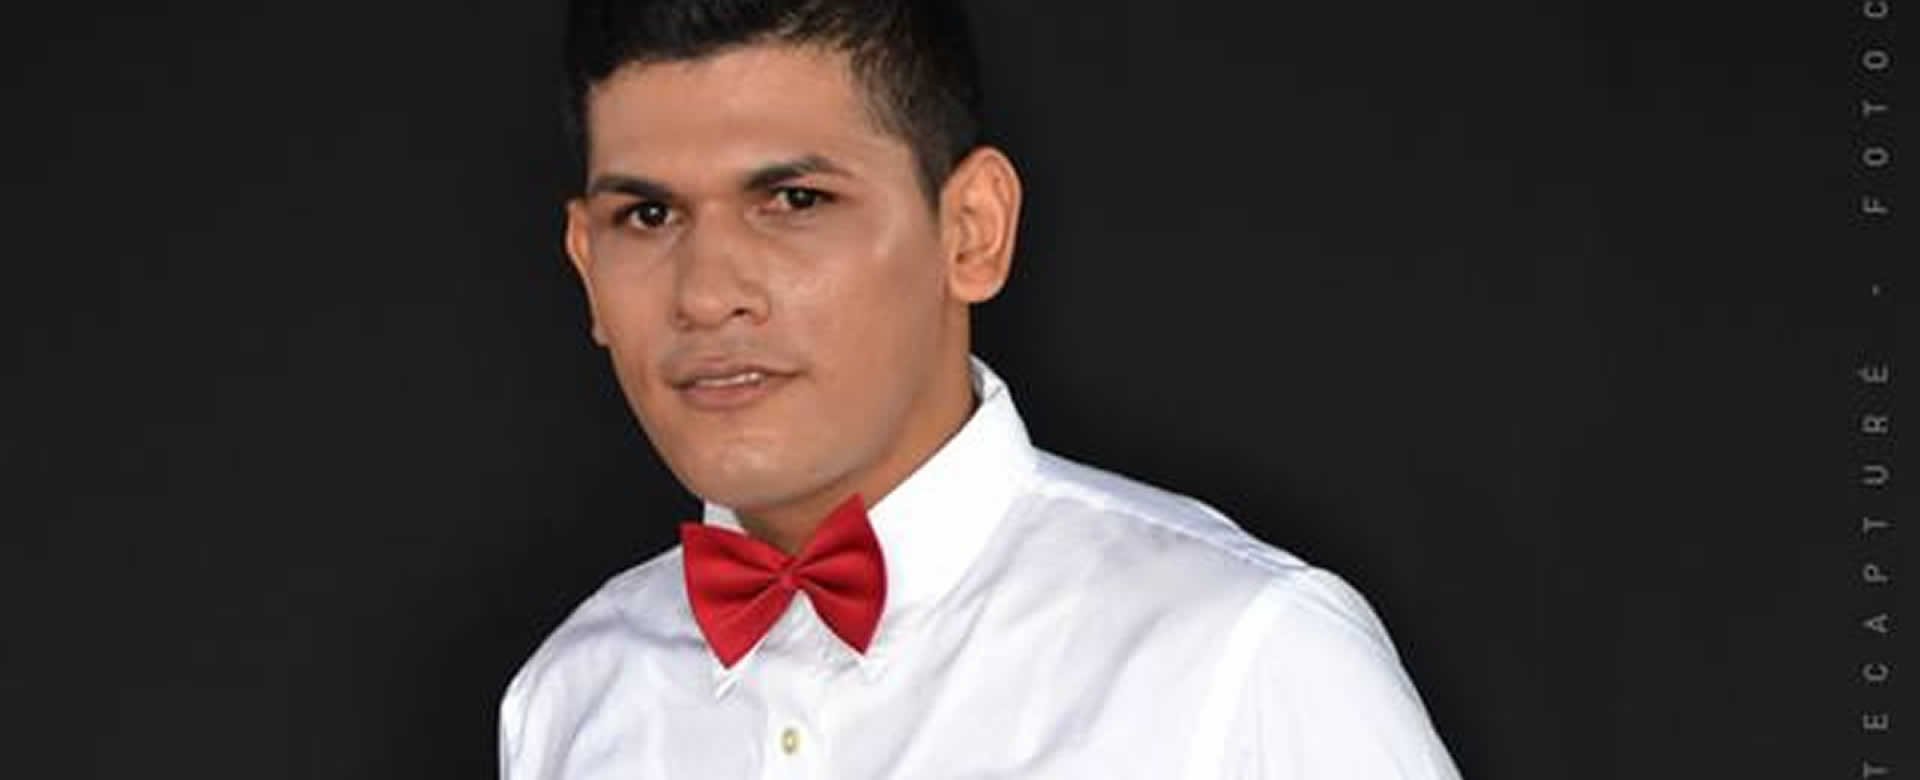 ¿Candidato a Mister Fashion Nicaragua, fue grabado teniendo relaciones sexuales en un baño público?